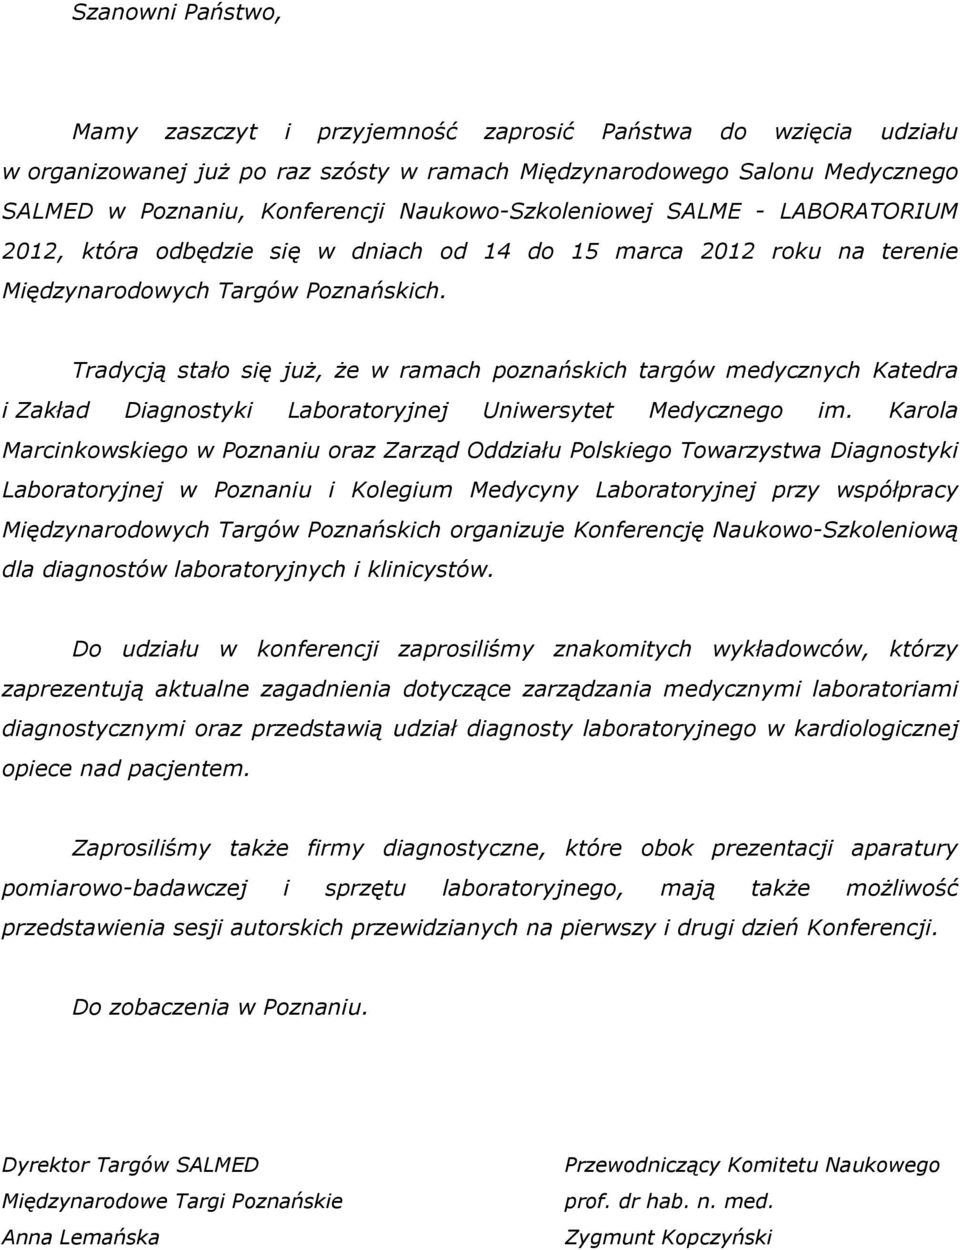 Tradycją stało się juŝ, Ŝe w ramach poznańskich targów medycznych Katedra i Zakład Diagnostyki Laboratoryjnej Uniwersytet Medycznego im.